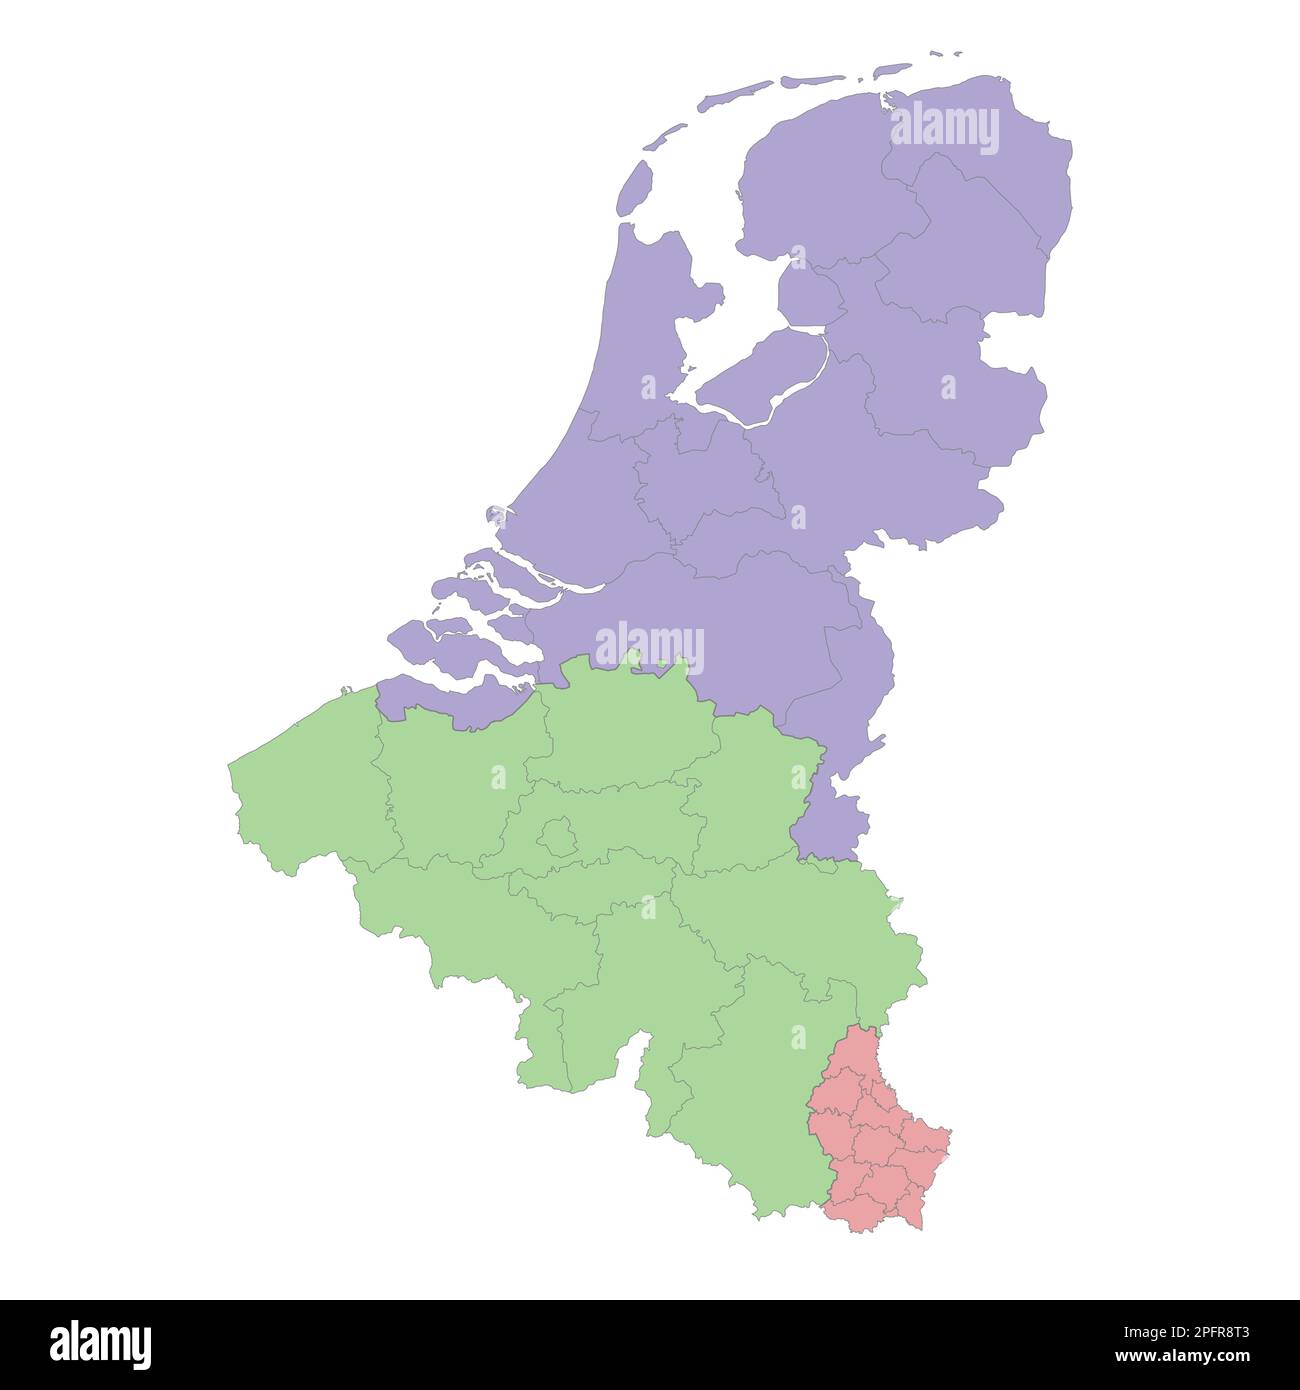 Mappa politica di alta qualità del Belgio, dei Paesi Bassi e del Lussemburgo con confini delle regioni o delle province. Illustrazione vettoriale Illustrazione Vettoriale